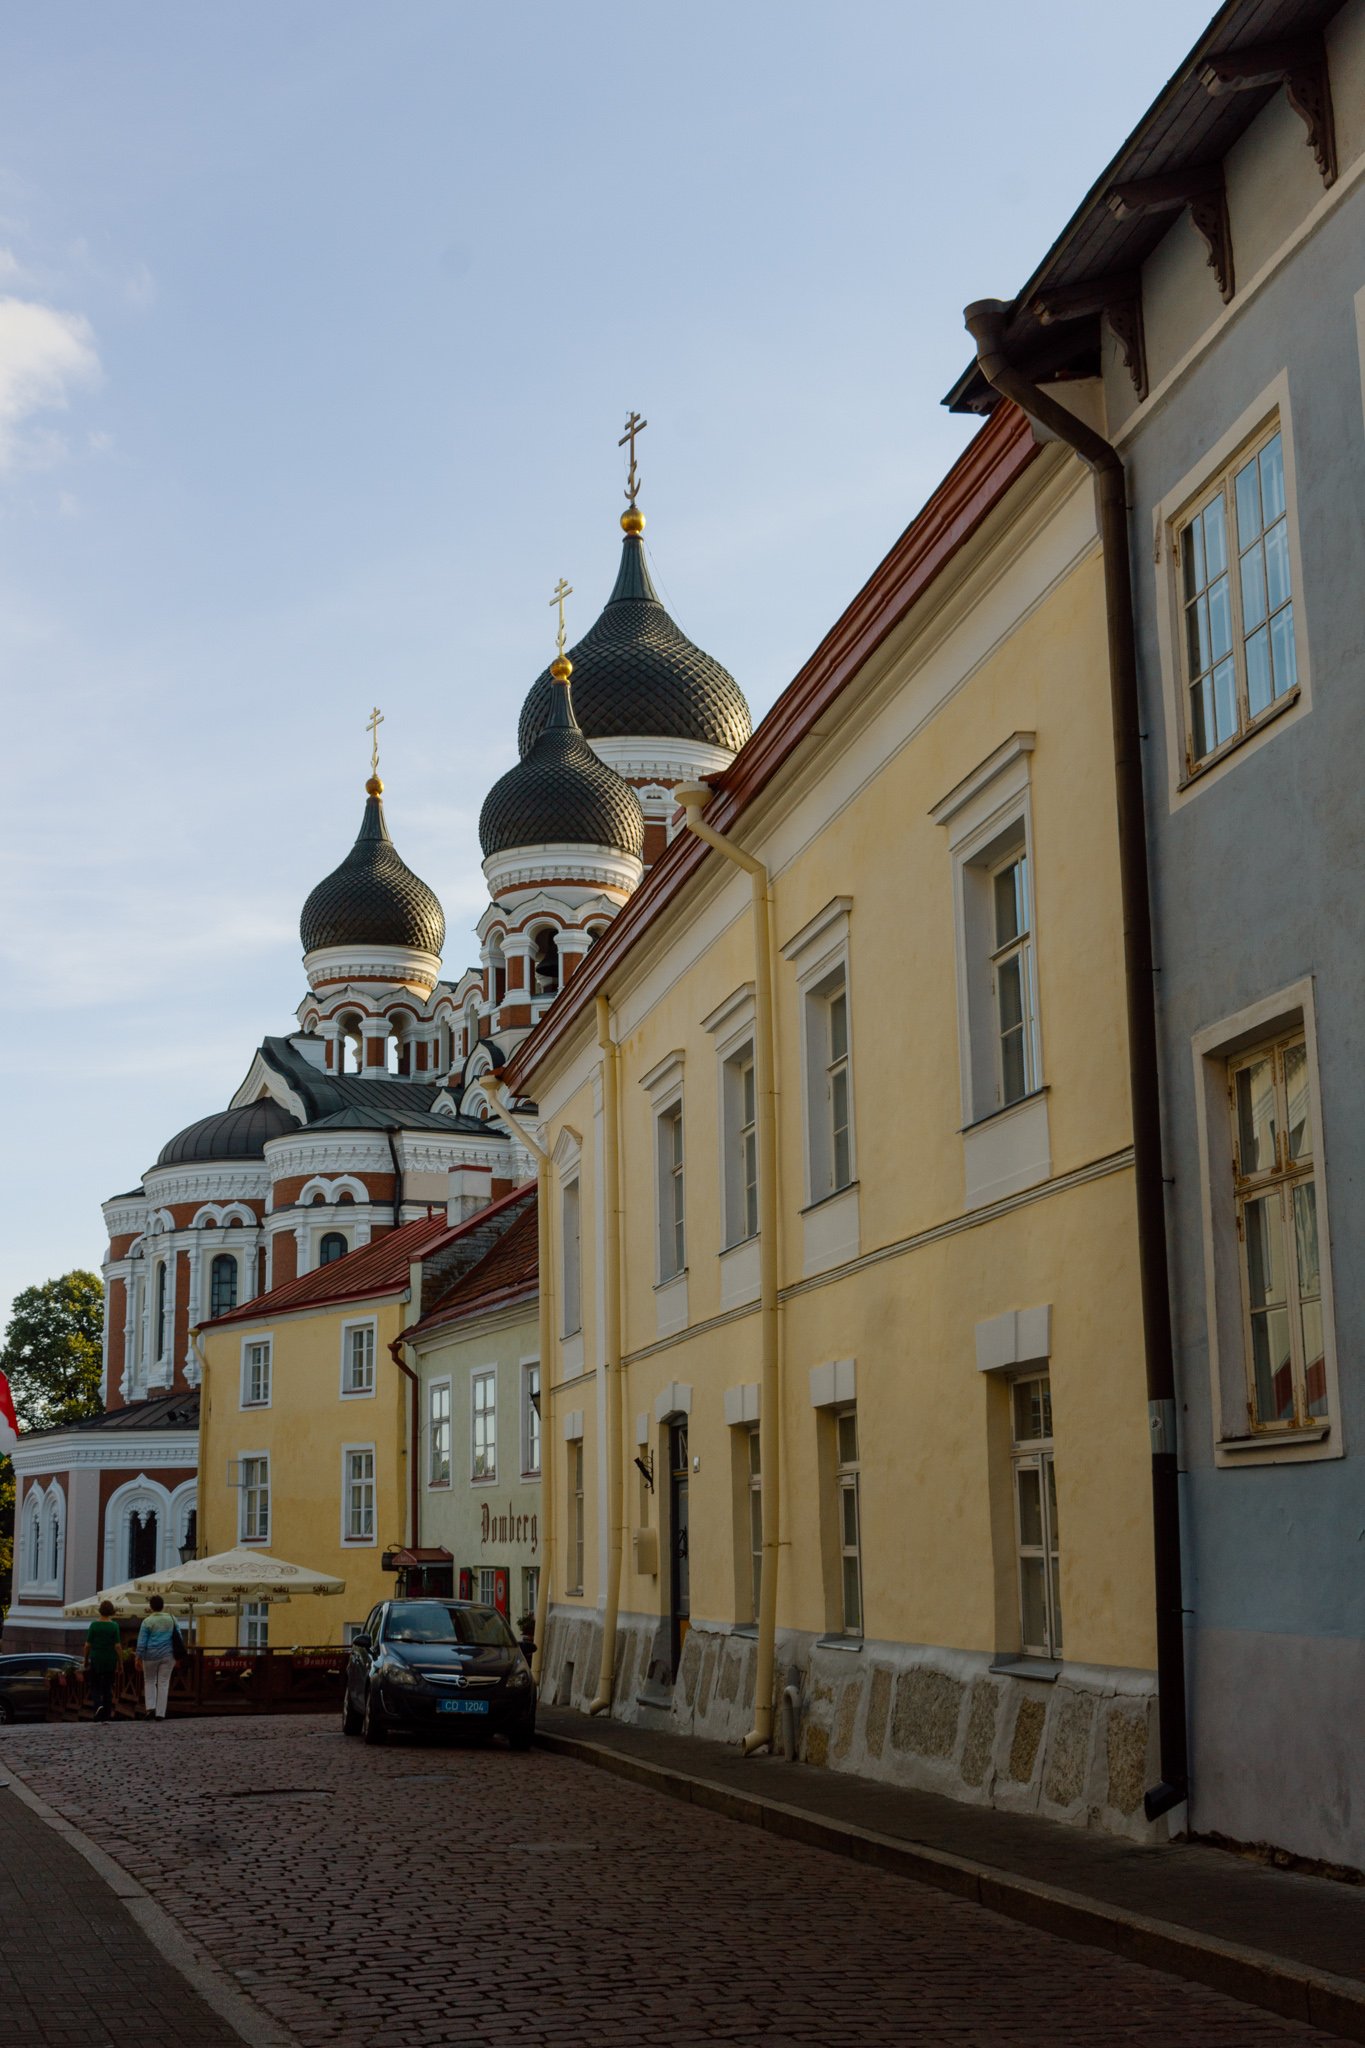 Tallinn's unique architecture